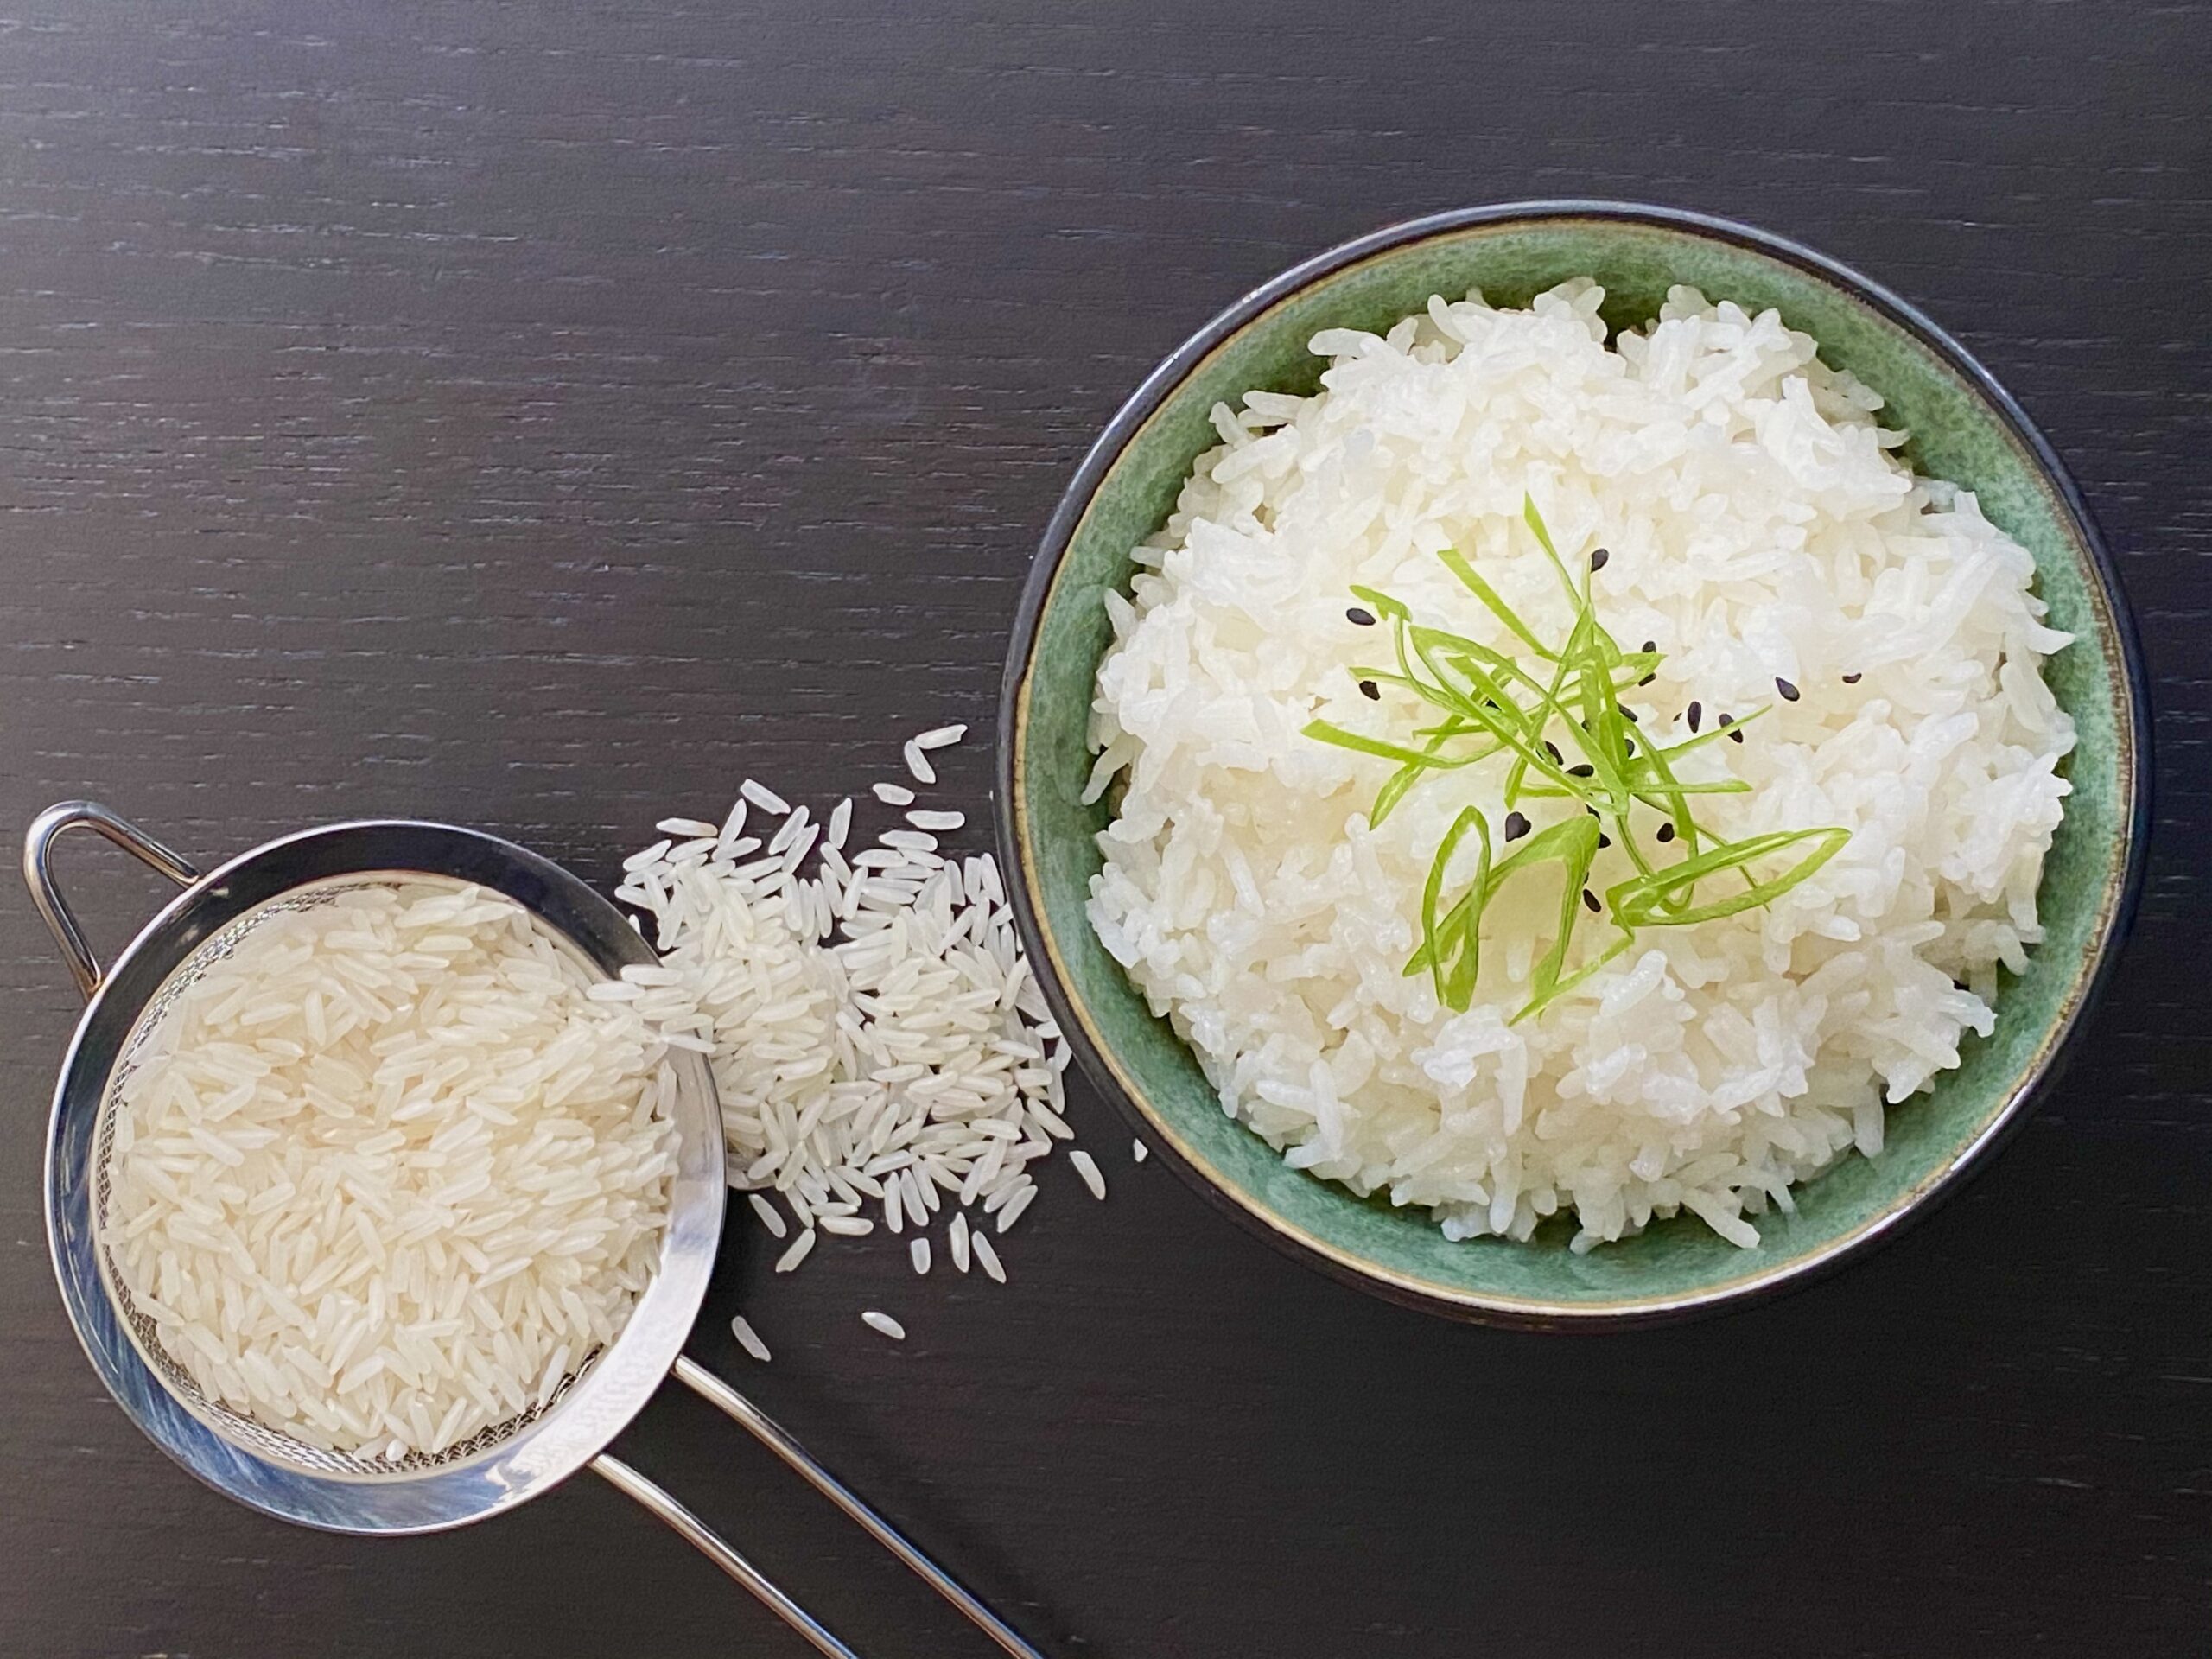 kone kaldenavn blive irriteret Sådan kan du nemt koge dine ris til perfektion - Danmad